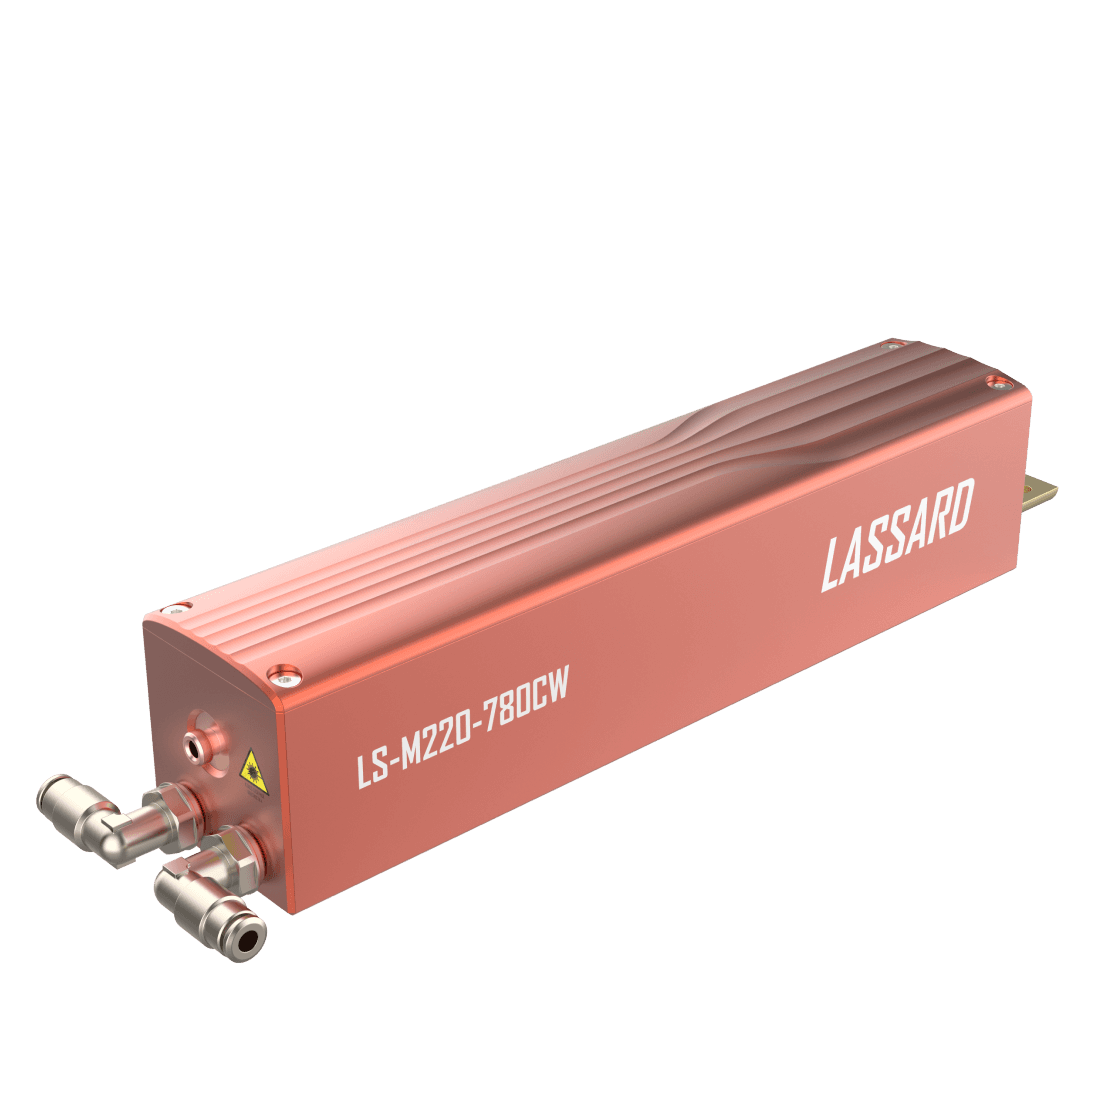 LS-M220-780CW